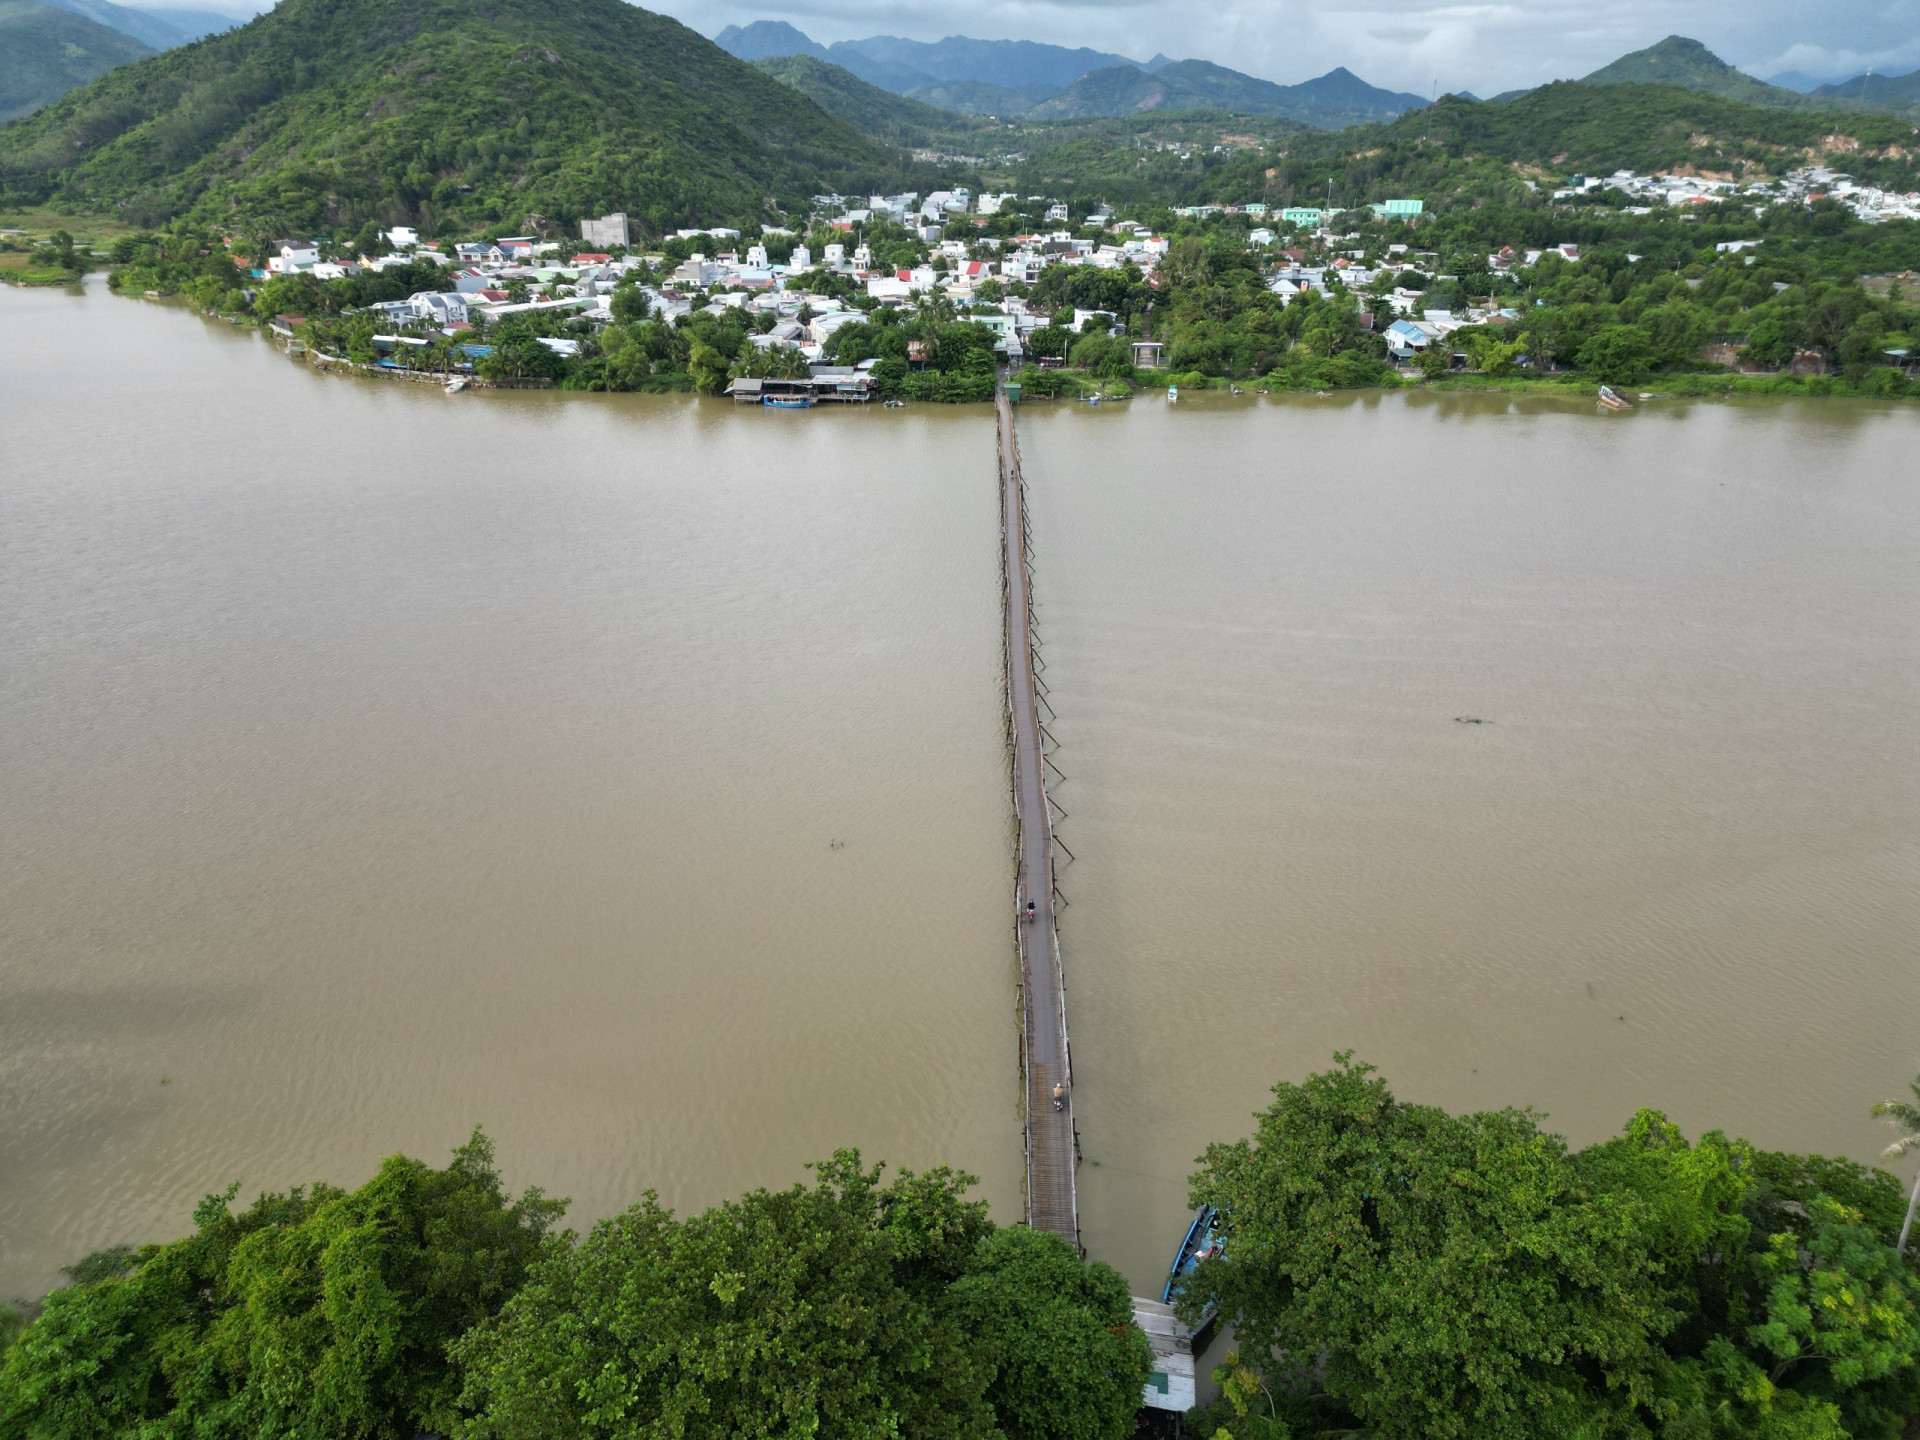 Cầu gỗ Phú Kiểng ở xã Vĩnh Ngọc (Nha Trang). Người dân nơi đây đang mong sớm có quy hoạch để được xây cầu kiên cố thay cho cầu gỗ này.